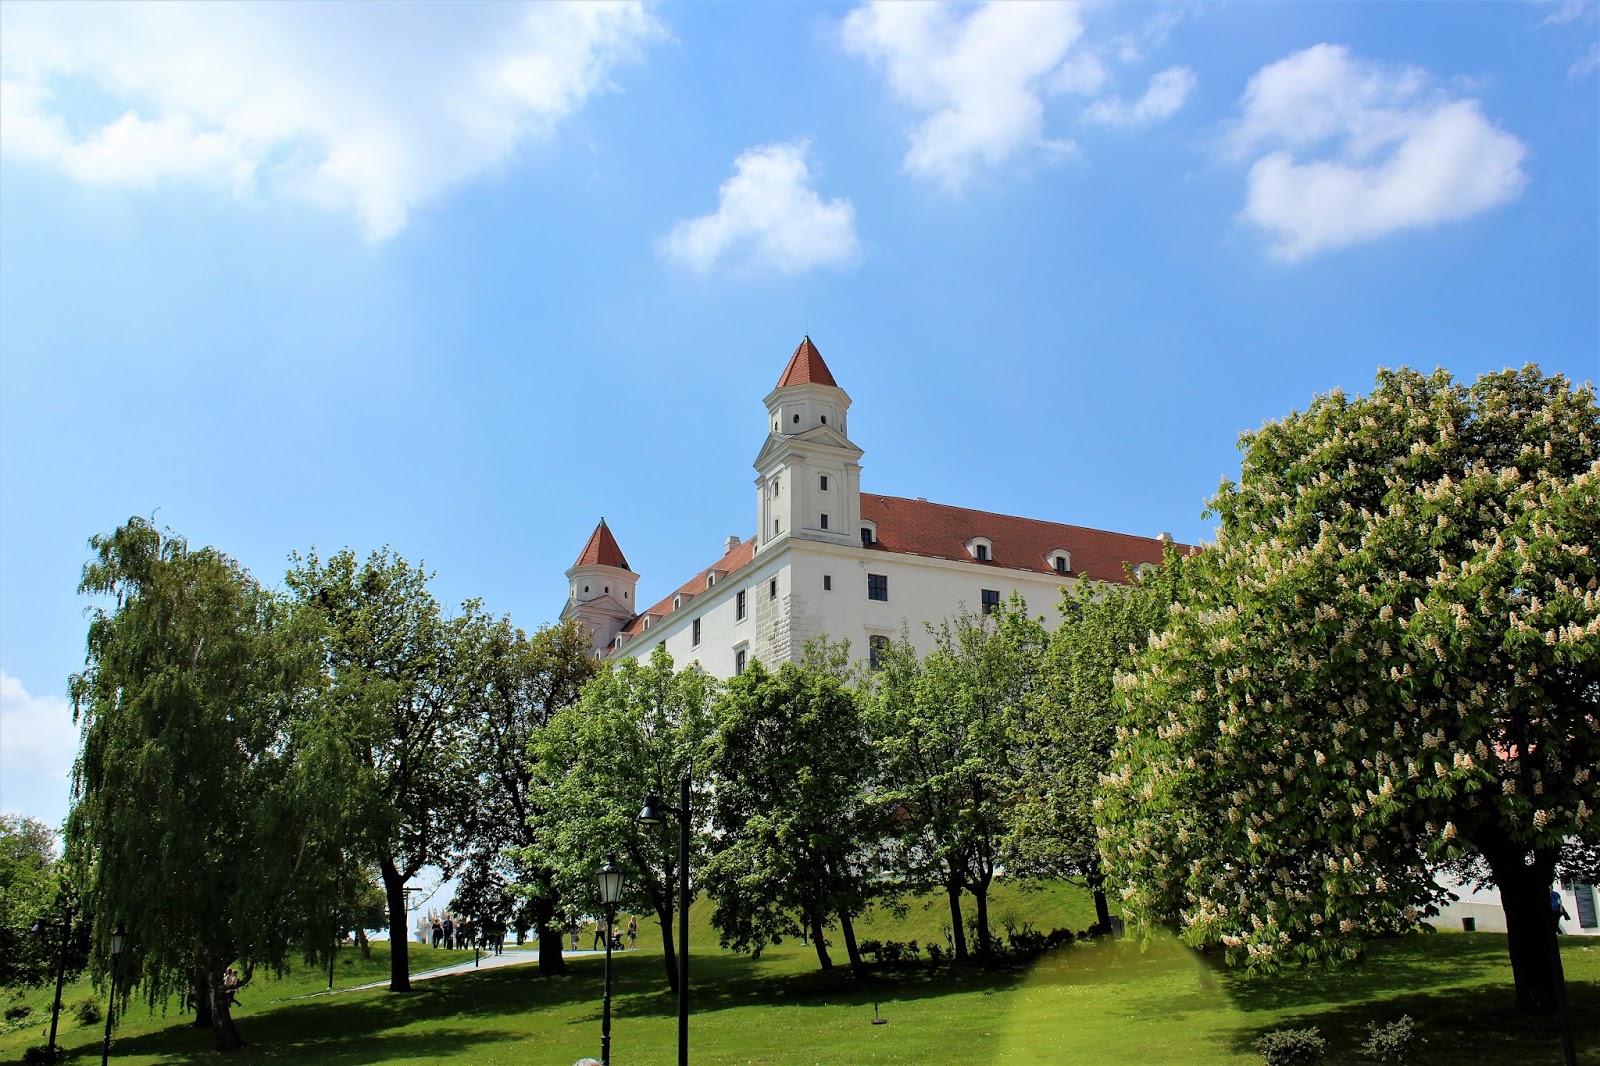 Zamek na wzgórzu - Bratislavský hrad